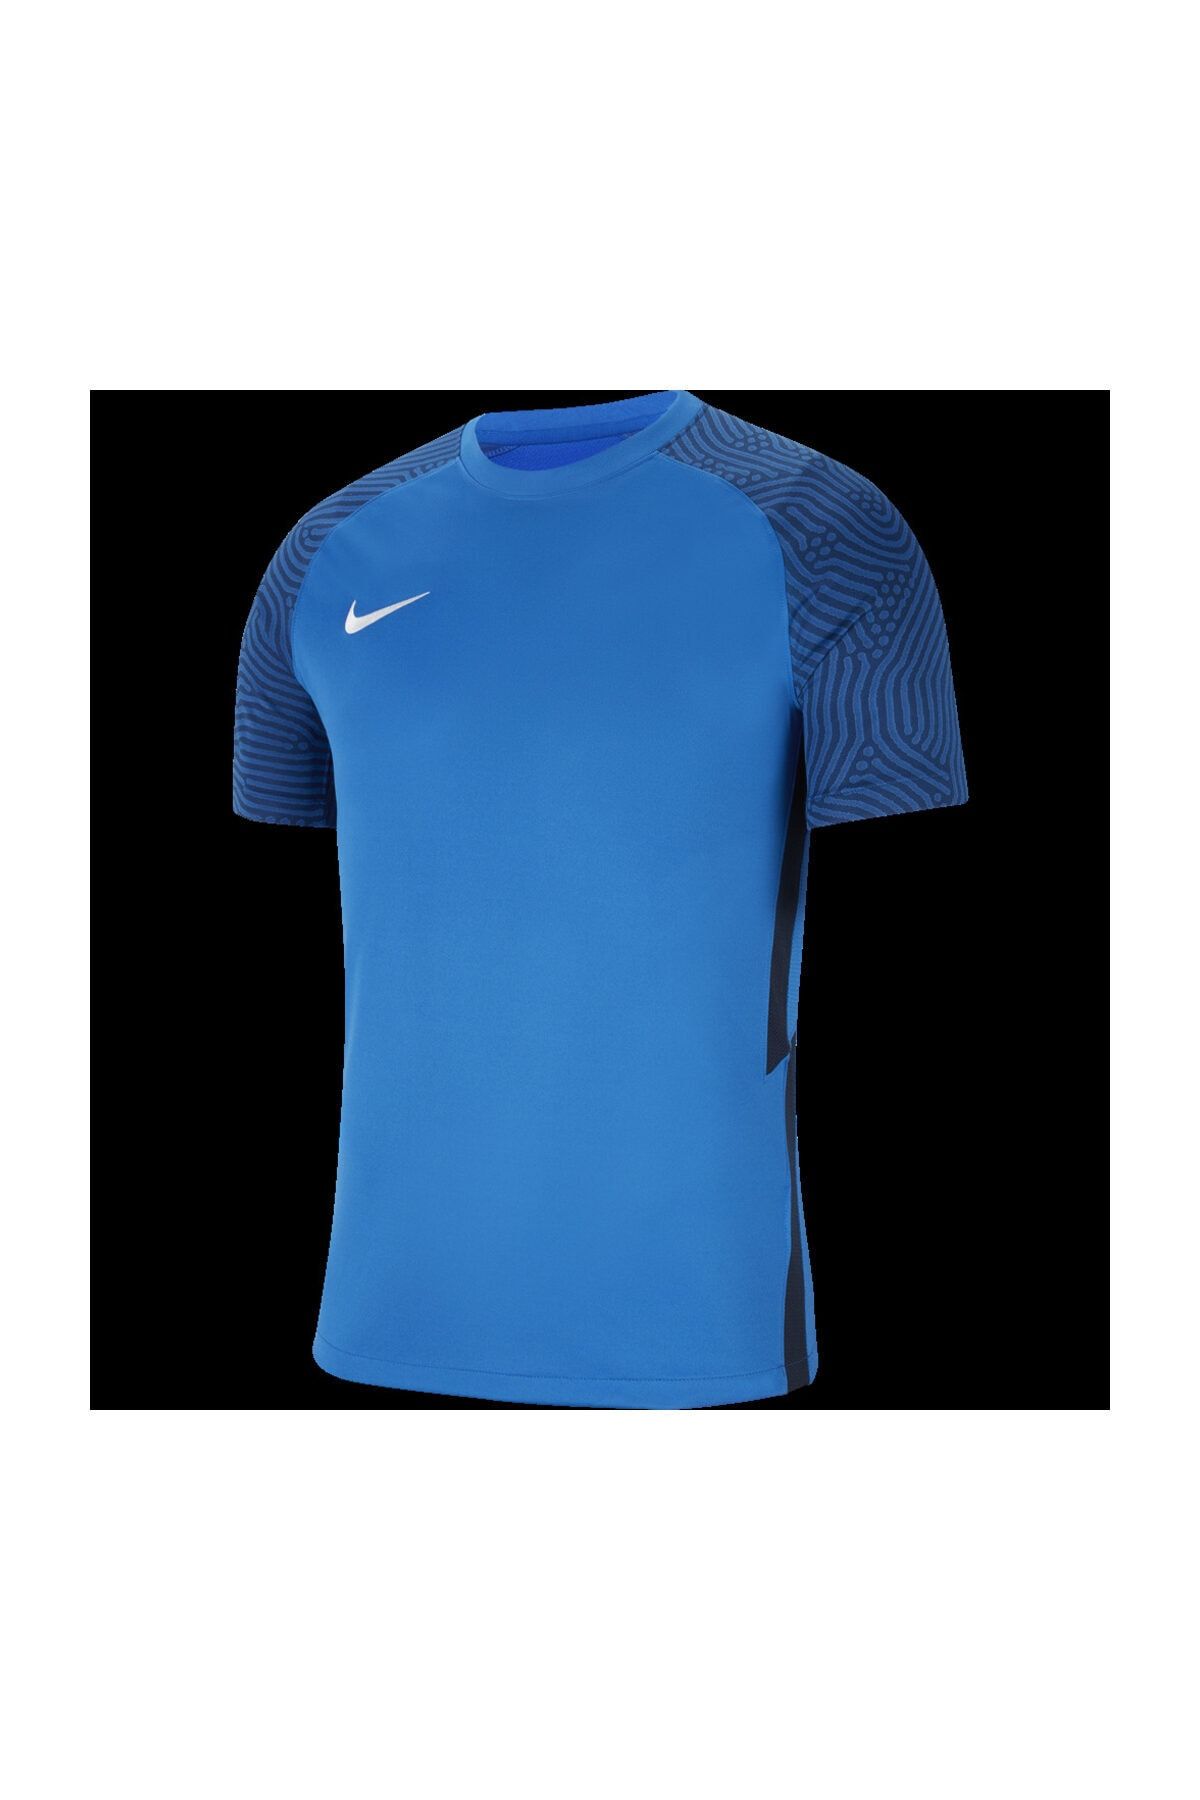 Nike Erkek Spor T-Shirt - DF STRKE II JSY SS - CW3544-463